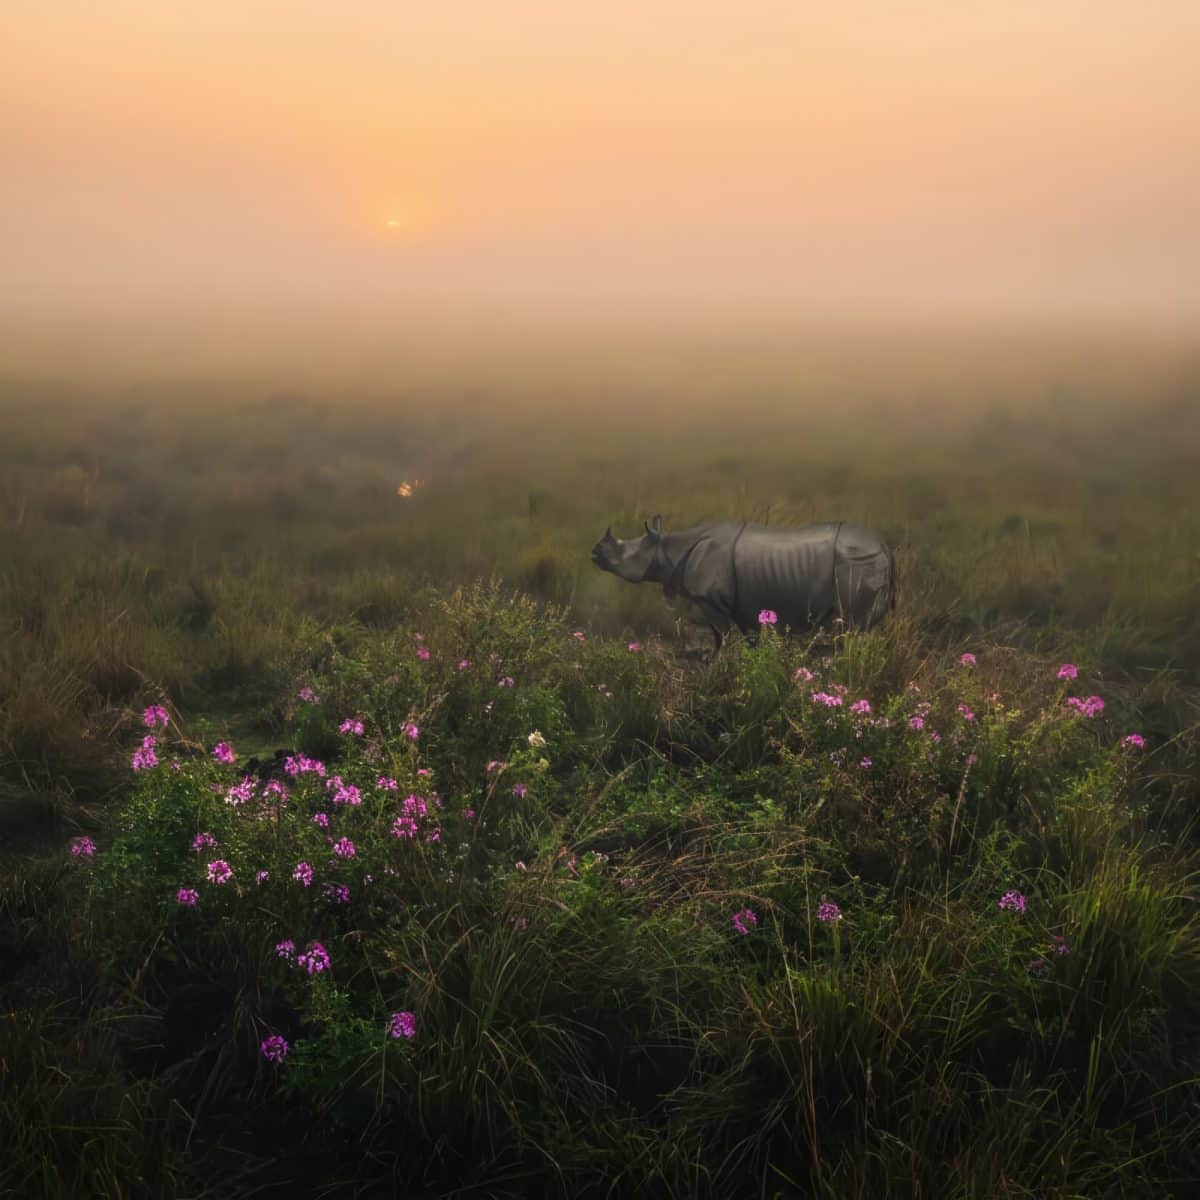 Финалист в категории «Природа и ландшафт»: «Носорог-единорог»  / © Himadri Bhuyan